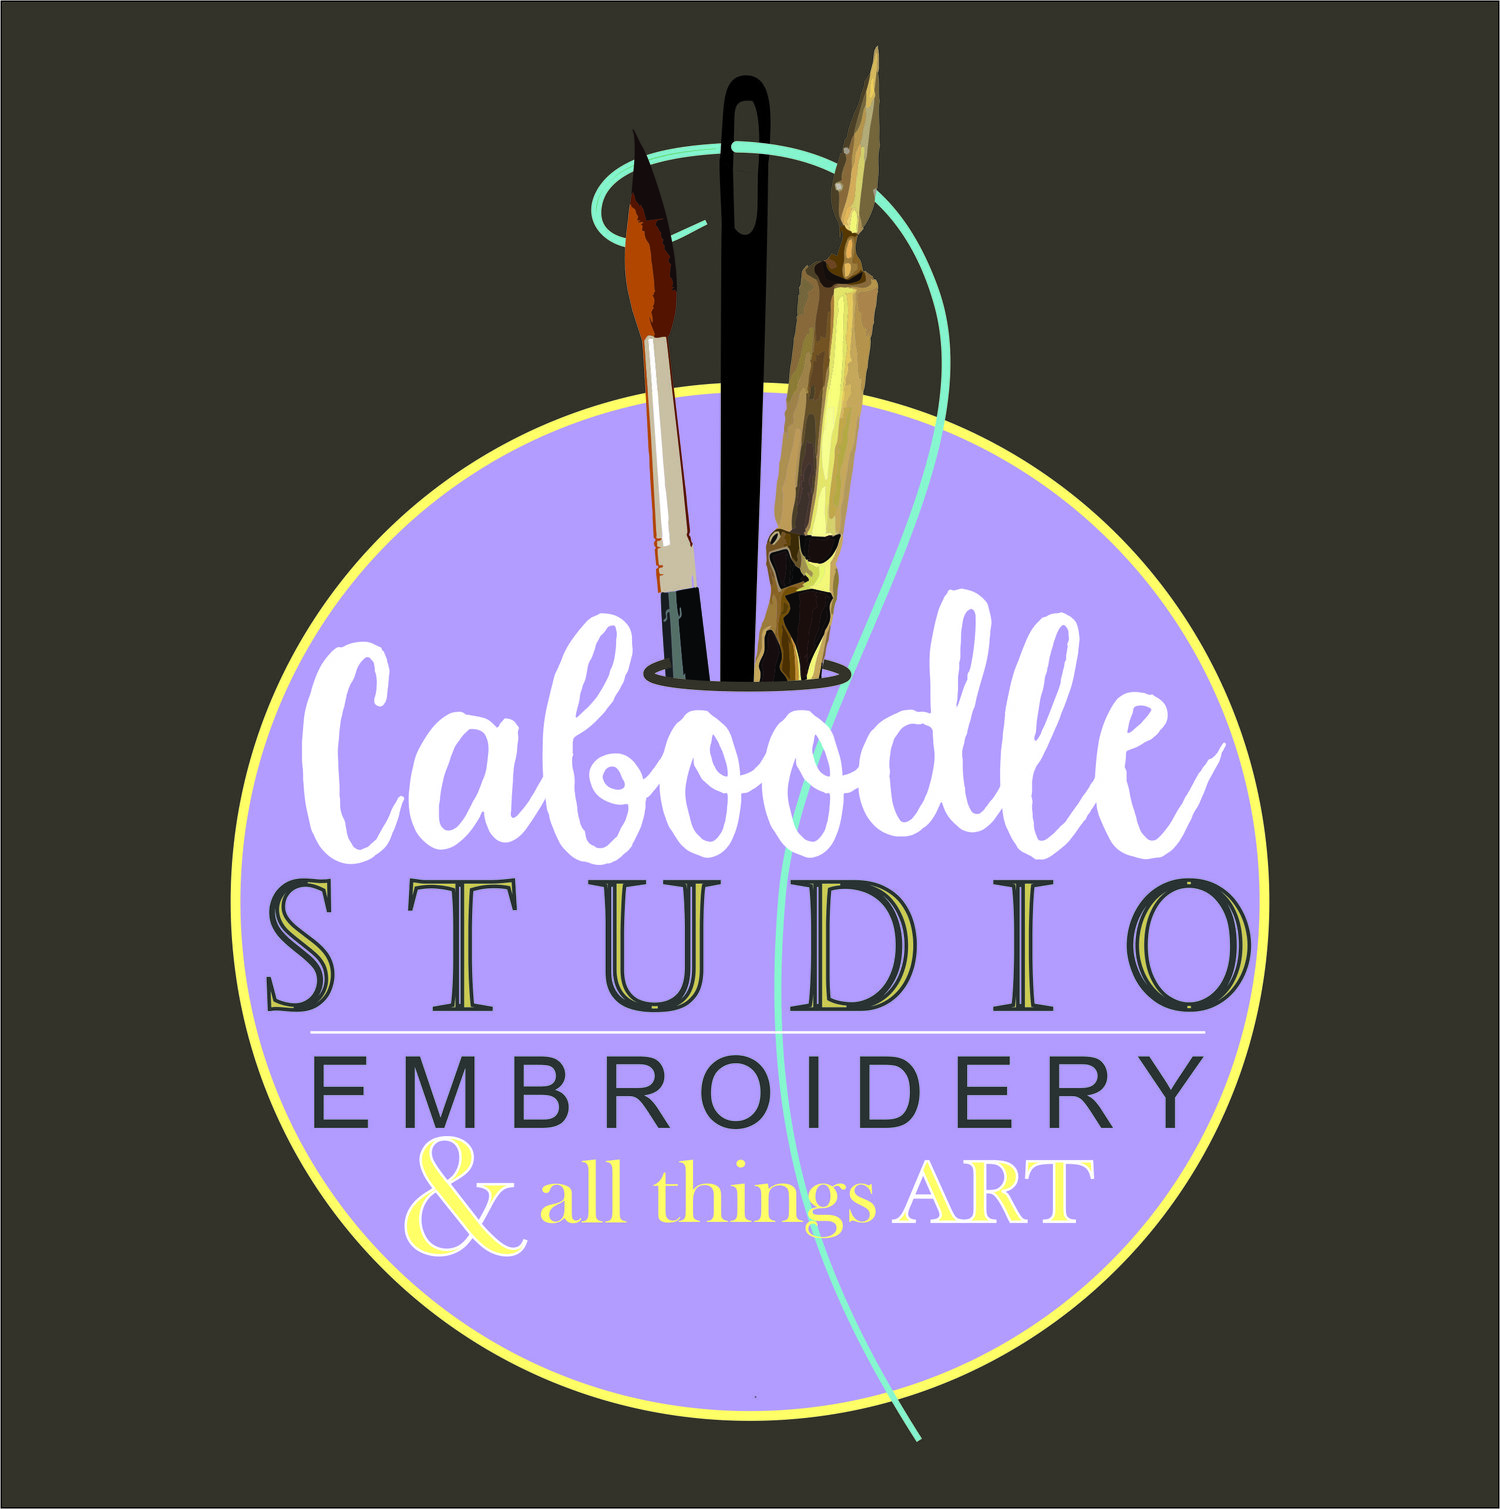 Caboodle Studio